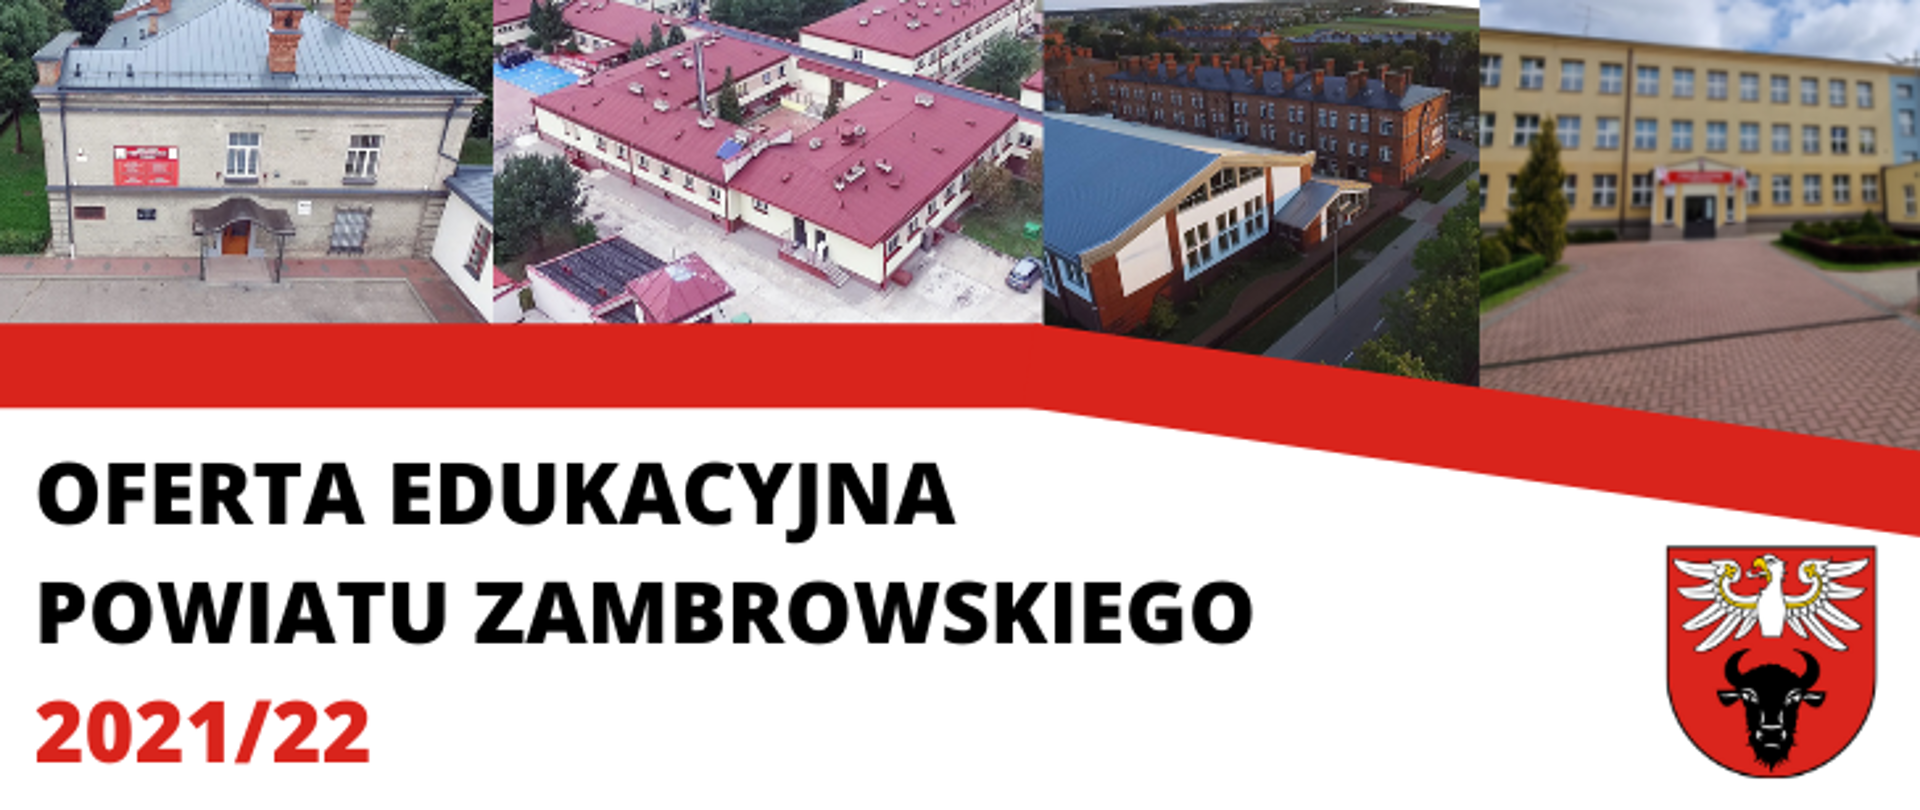 na obrazku znajdują się 4 zdjęcia szkół powiatu zambrowskiego od lewej: ZSA, SOSW, ZS1 i ILO, pod zdjęciami znajduje się pasek czerwony, a pod nim napis "oferta edukacyjna powiatu zambrowskiego 2021/22", w prawym dolnym rogu logo powiatu zambrowskiego